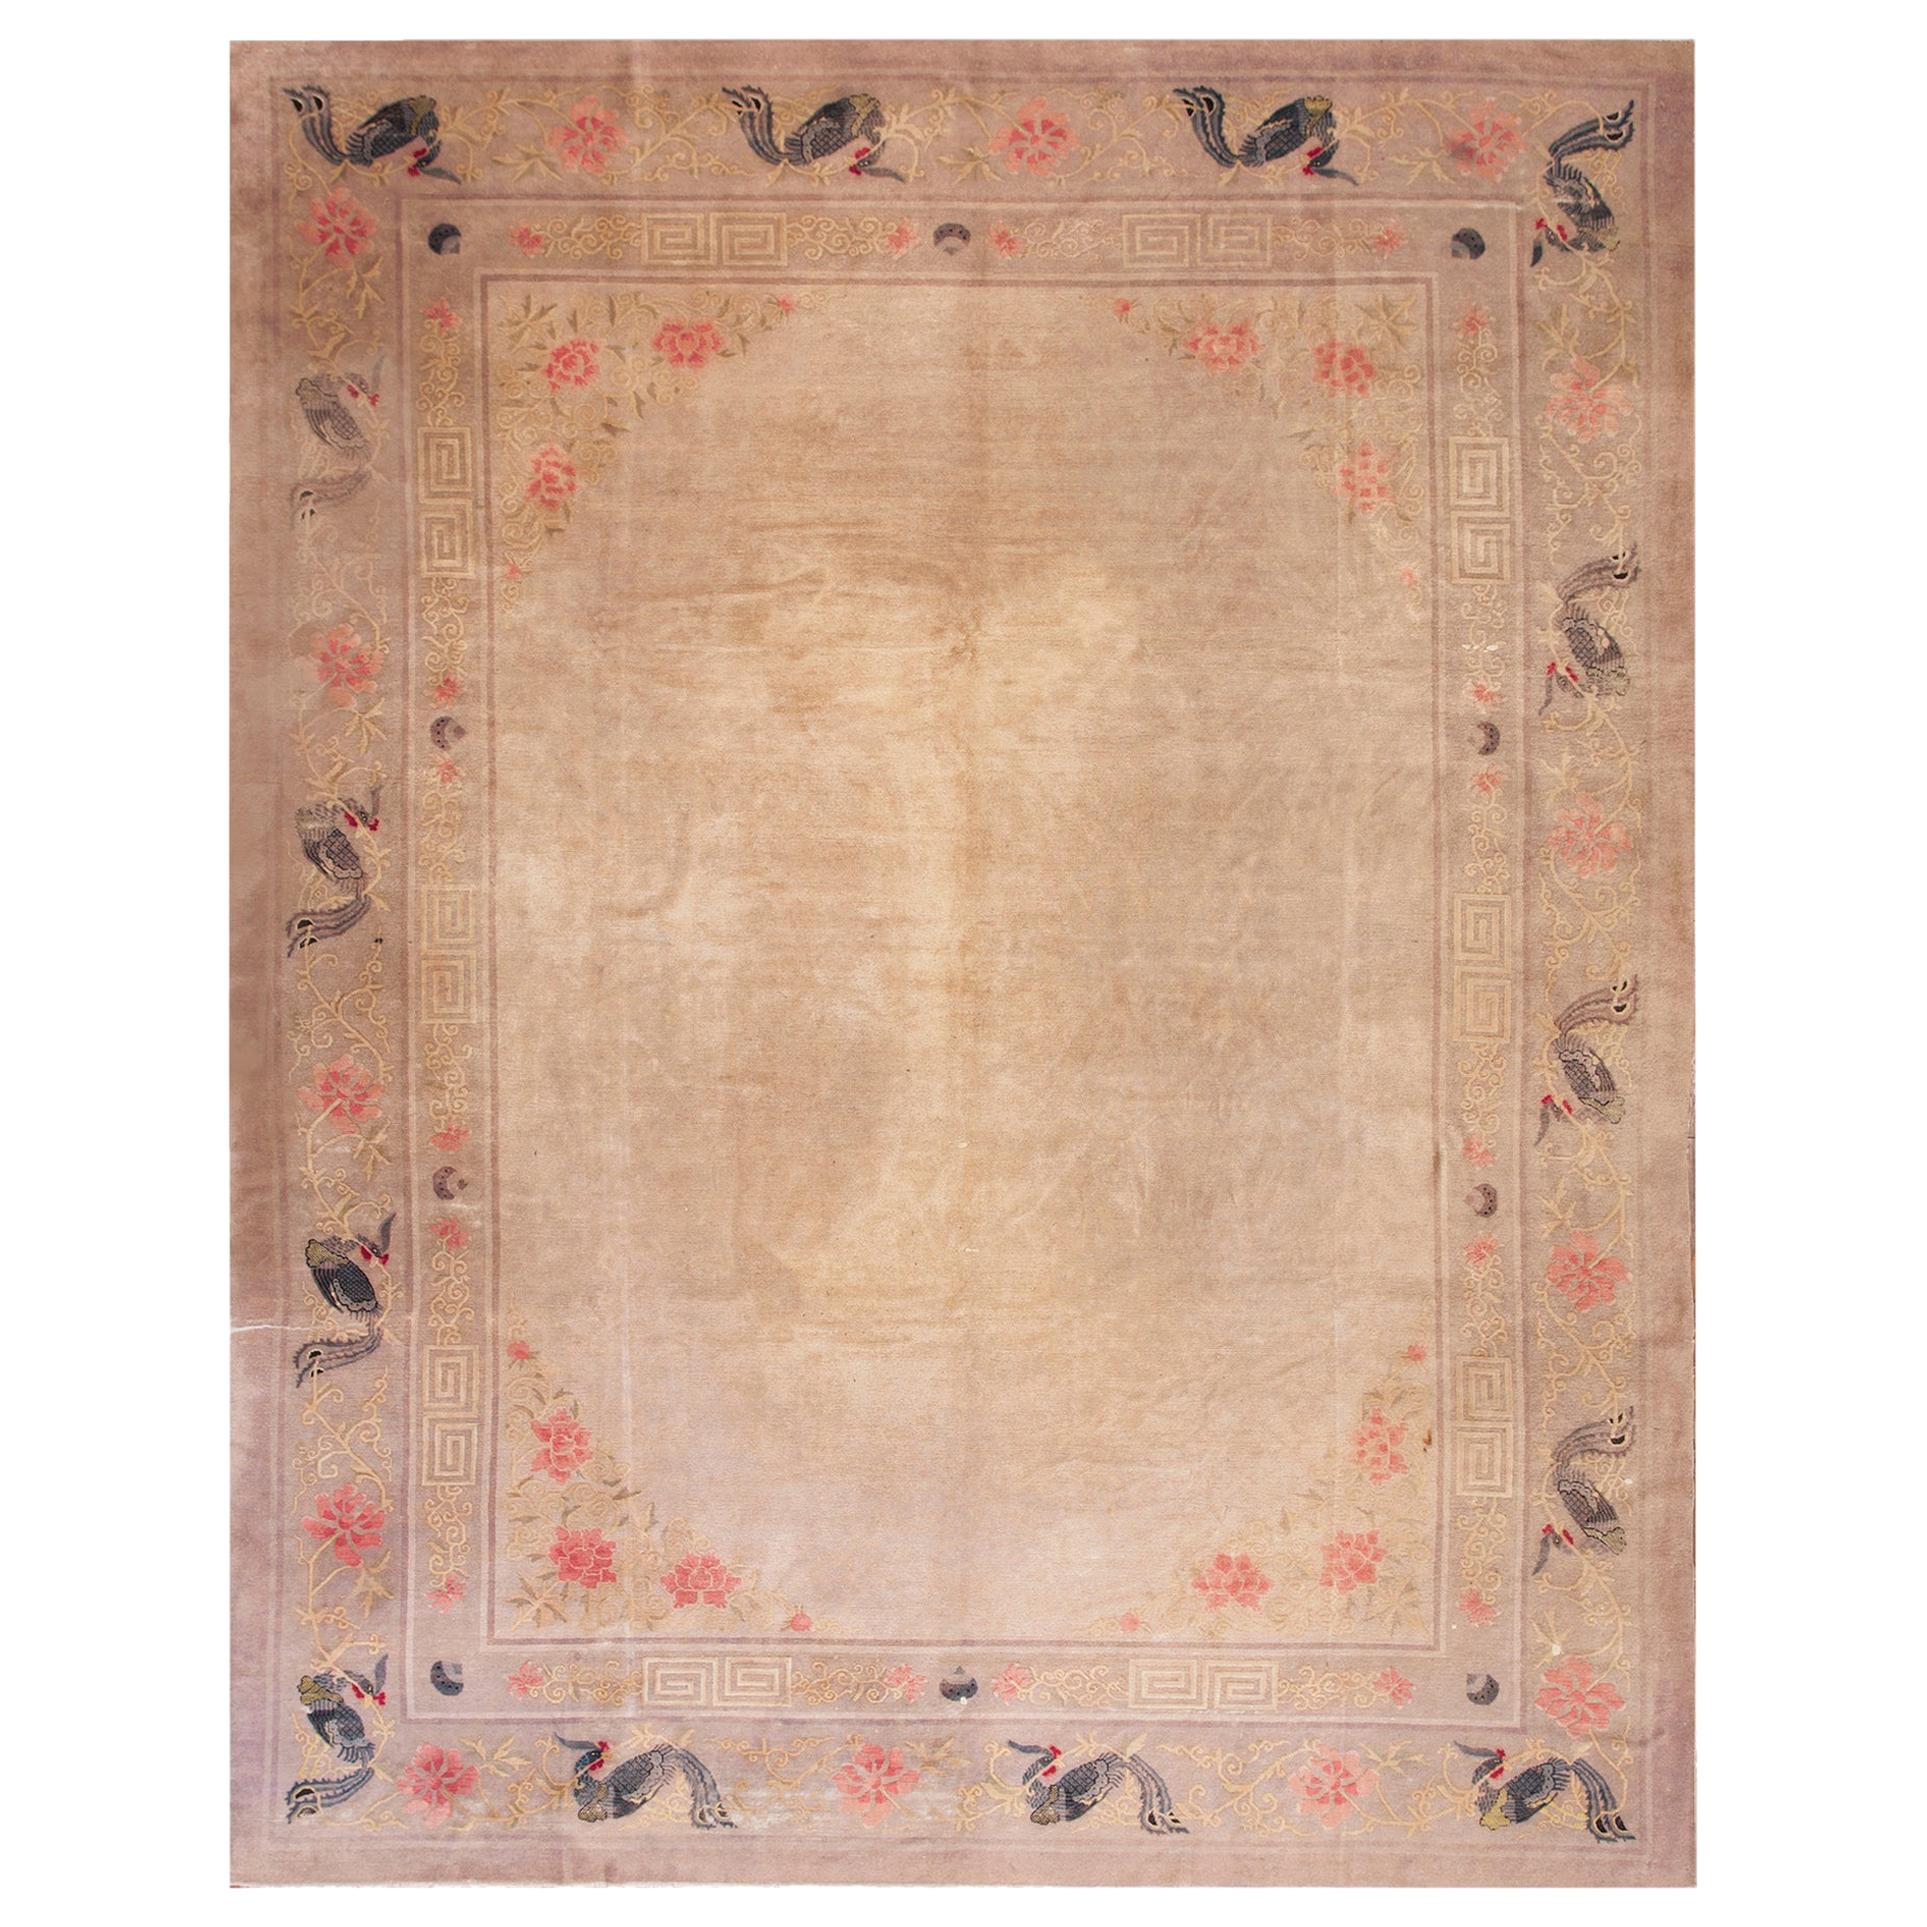 Ende 19. Jahrhundert  Chinesischer Pekinger Teppich ( 9' x 11'8" - 275 x 355)